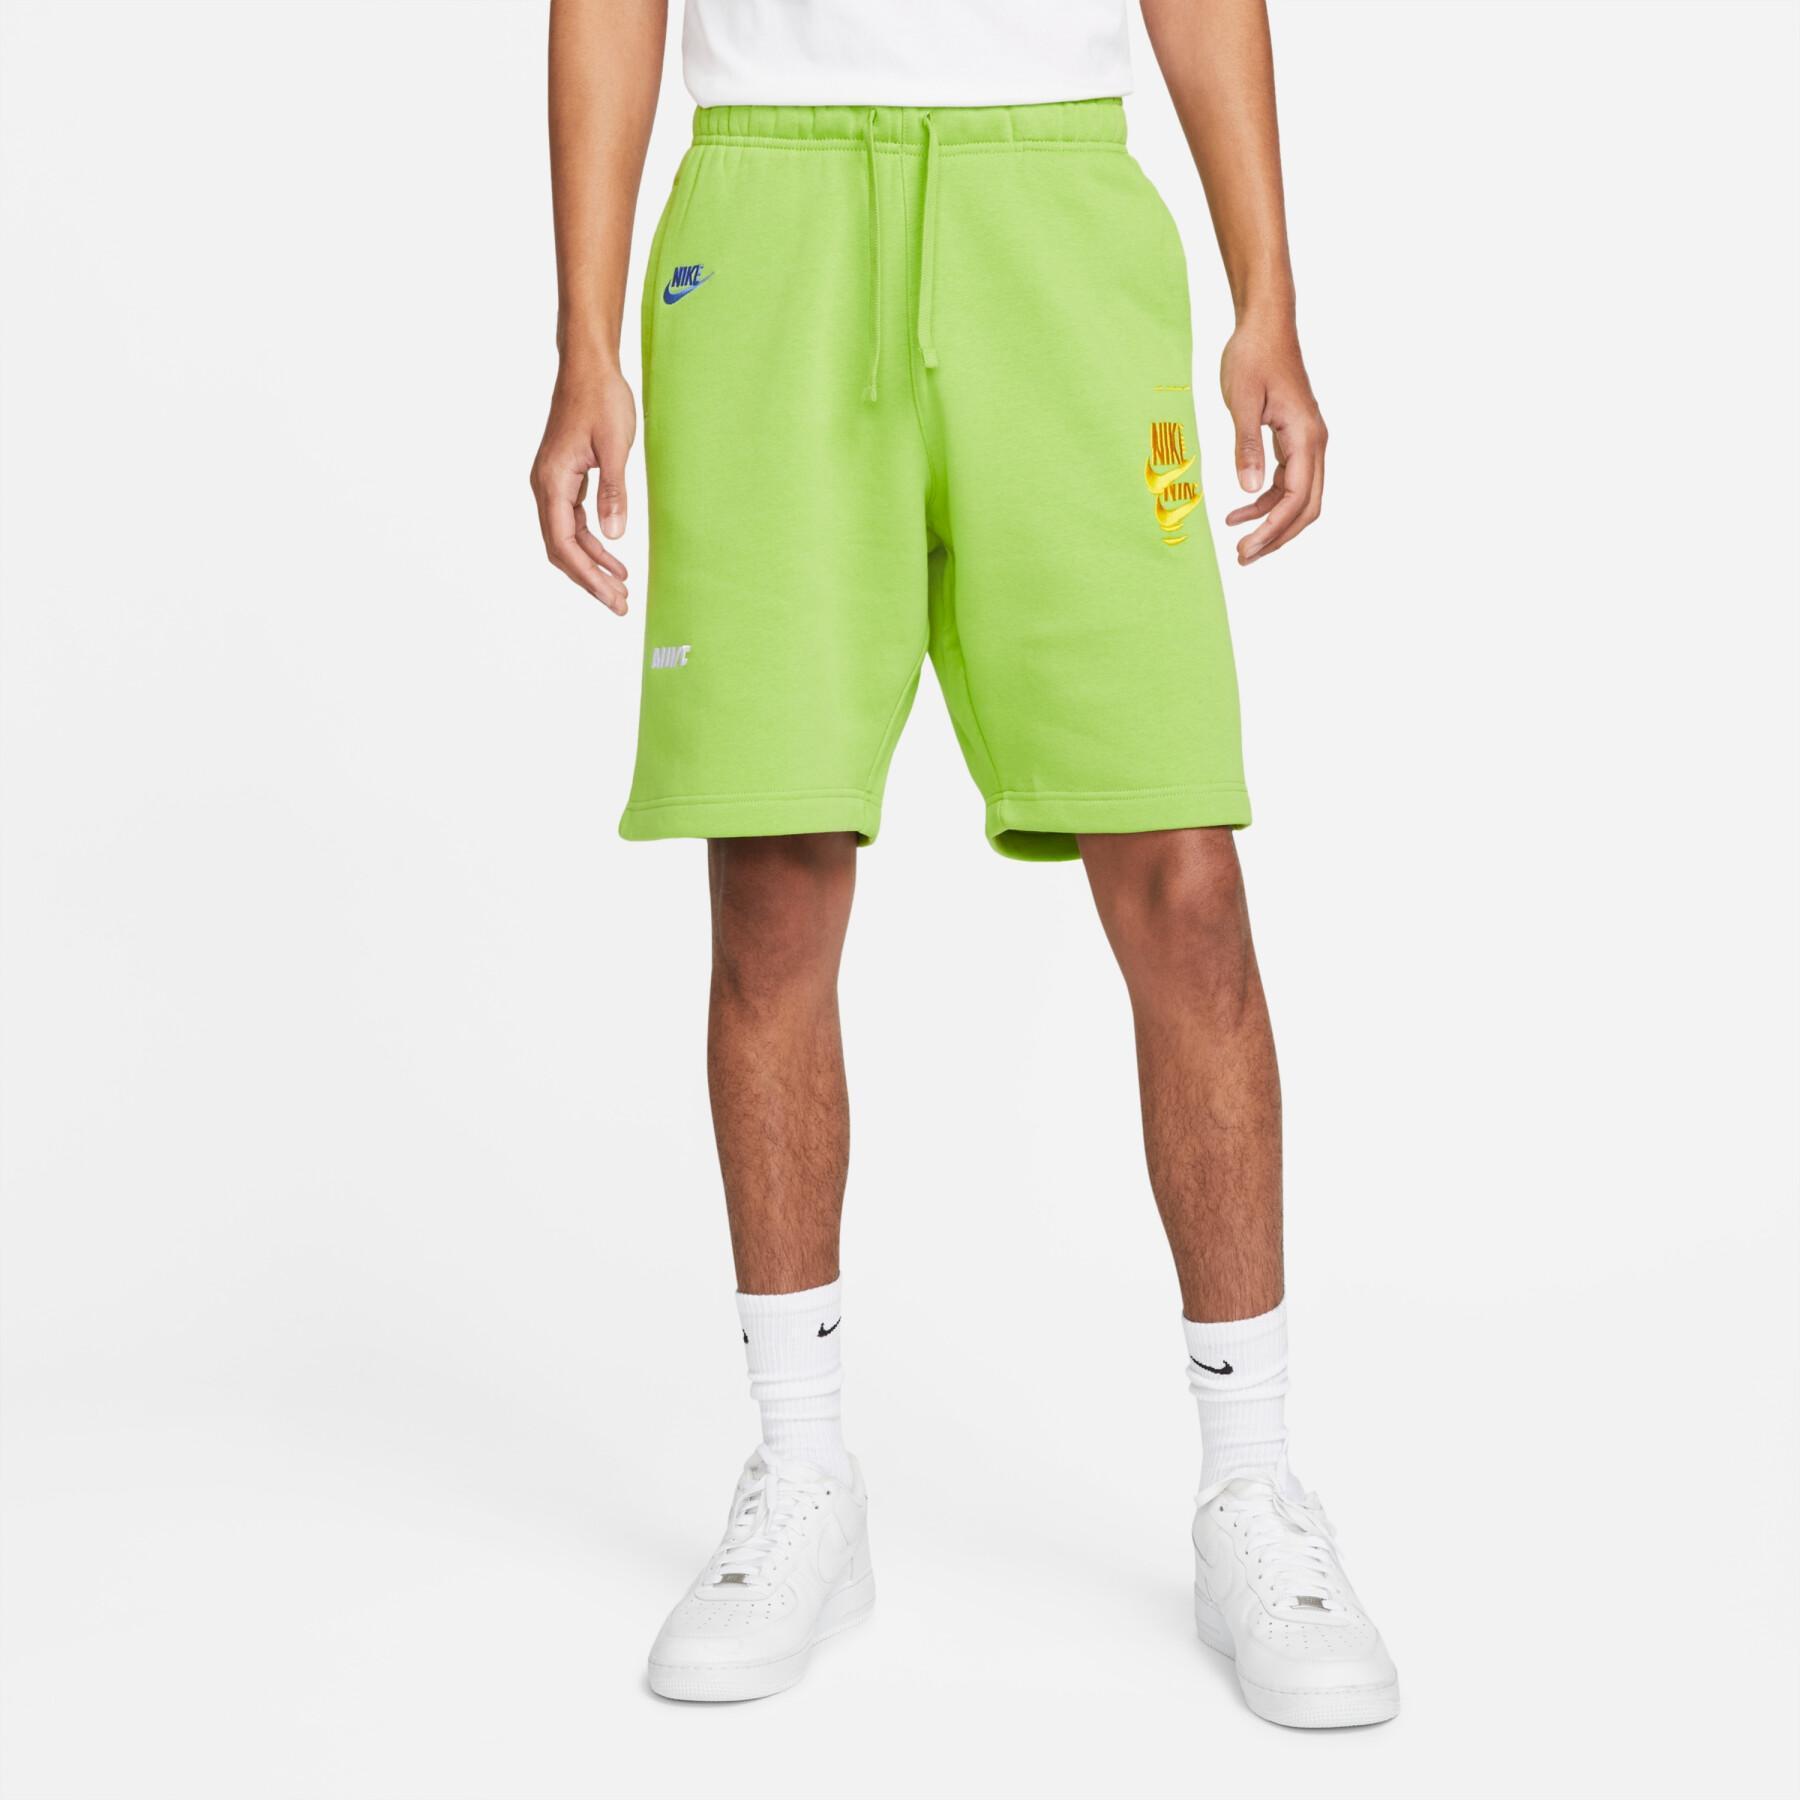 Спортивные шорты мужские Nike Spe+ Ft Short Mfta DM6877-332 зеленые L